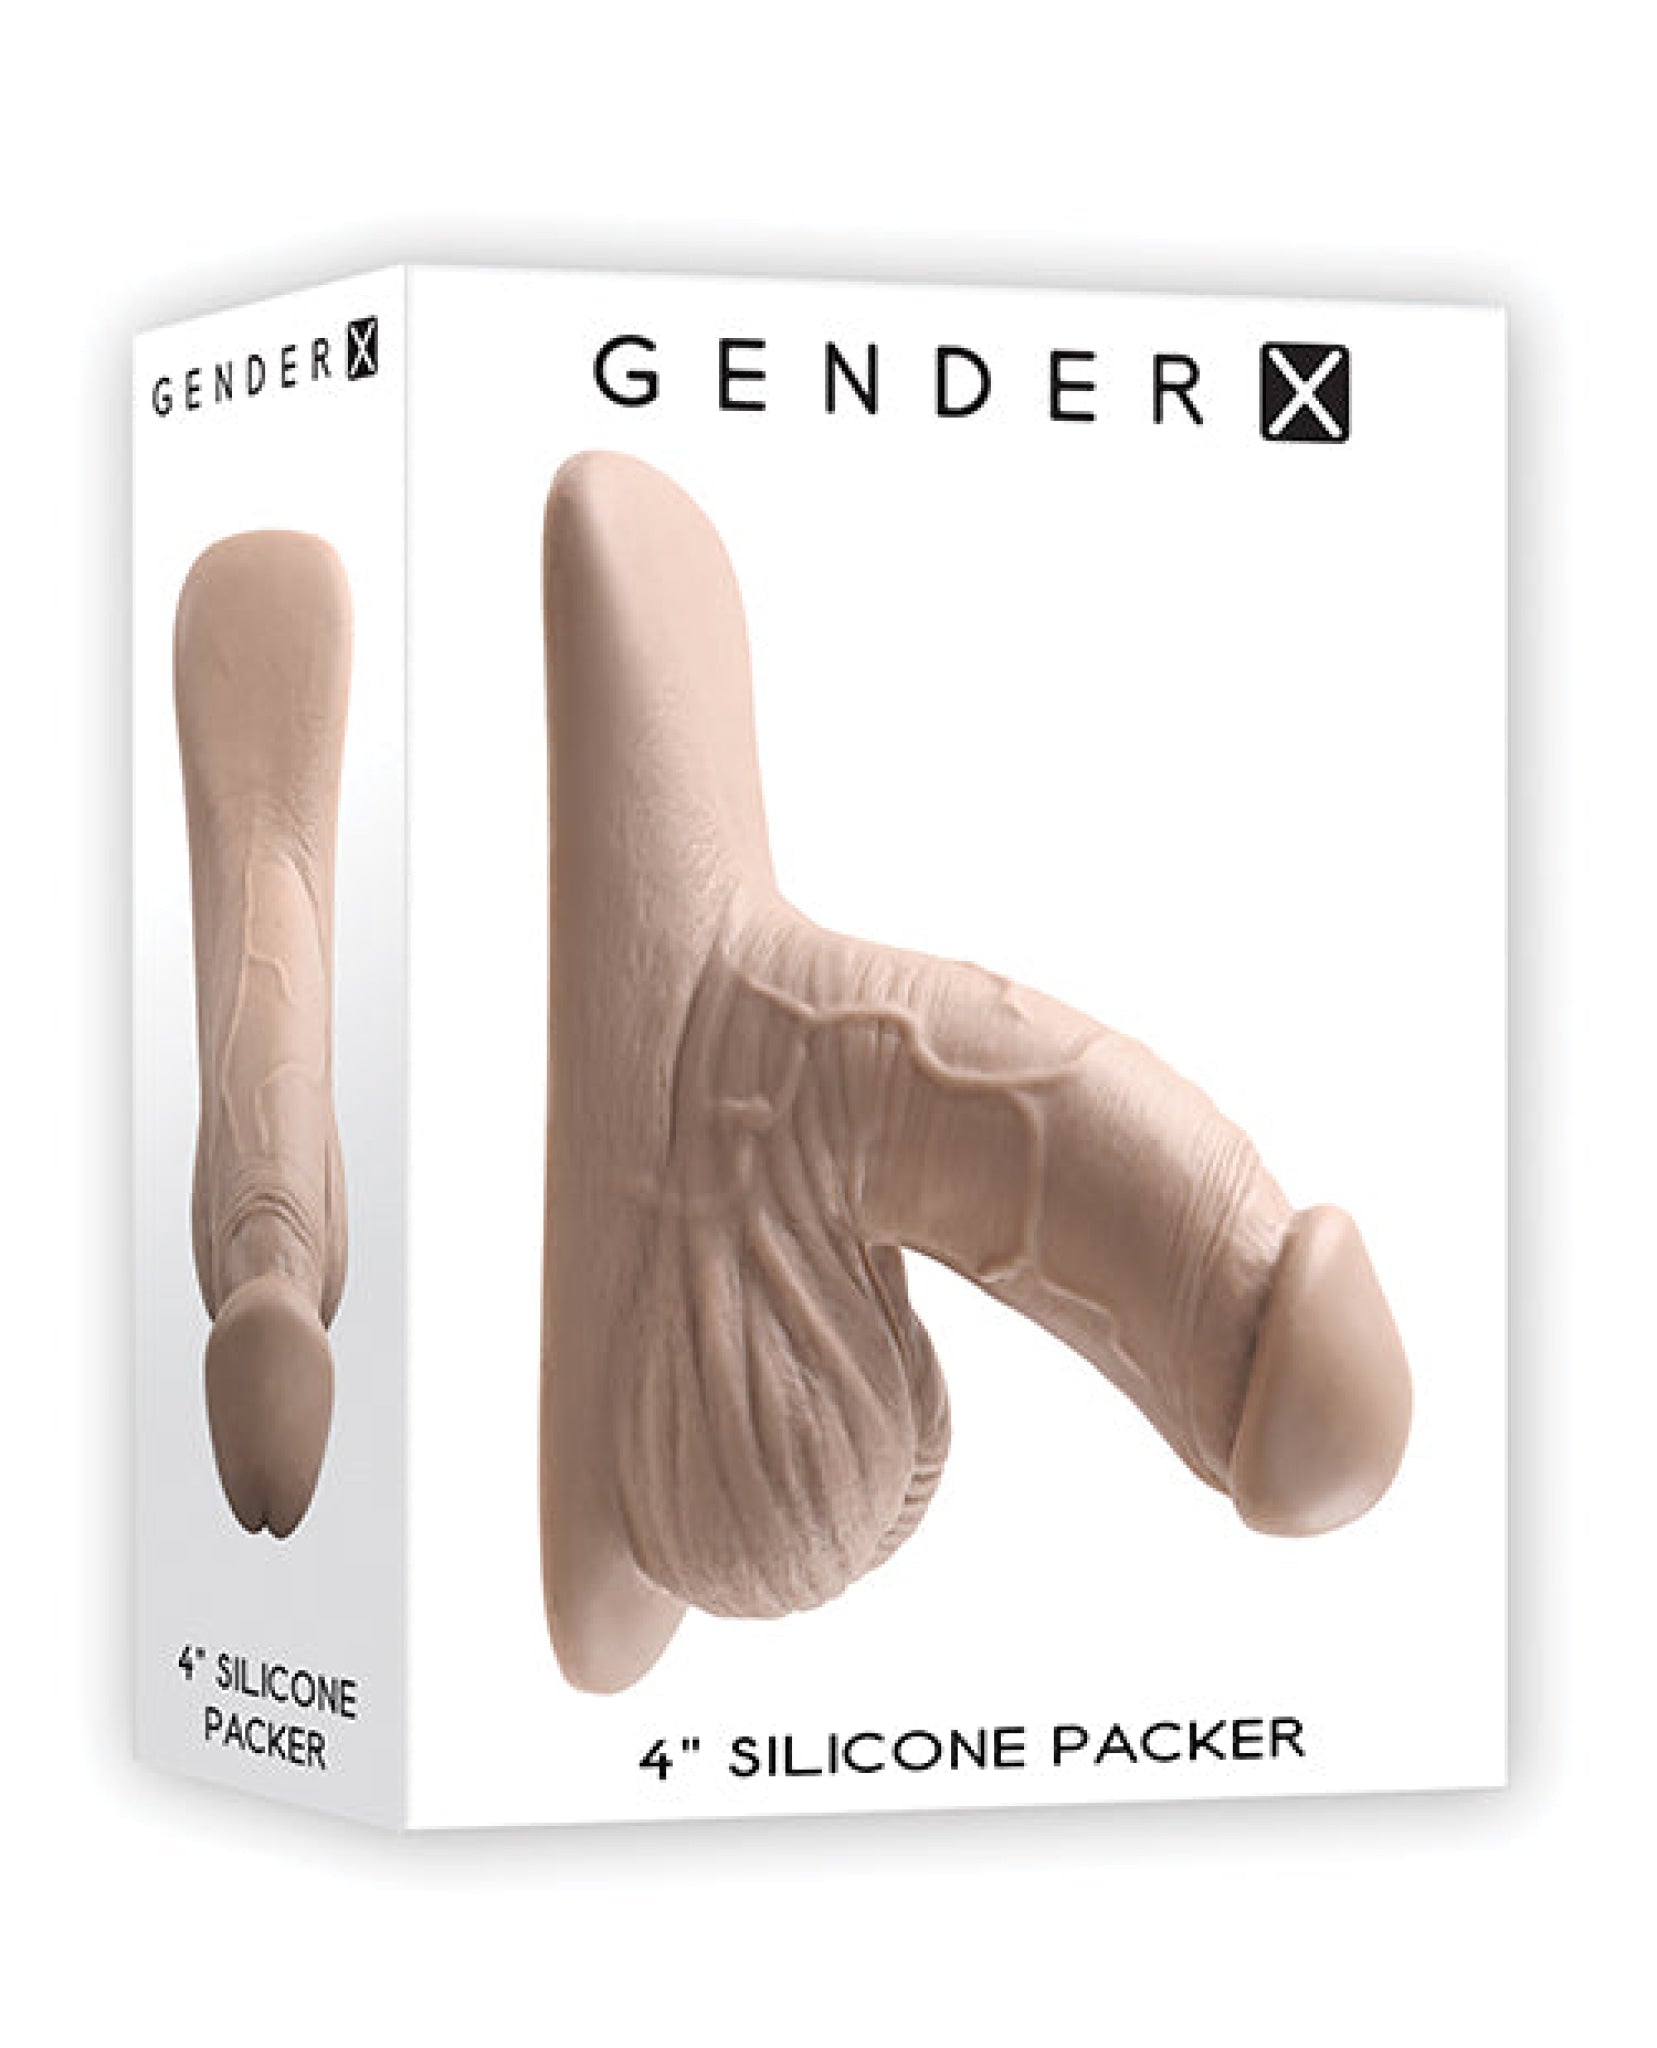 Gender X 4" Silicone Packer Gender X